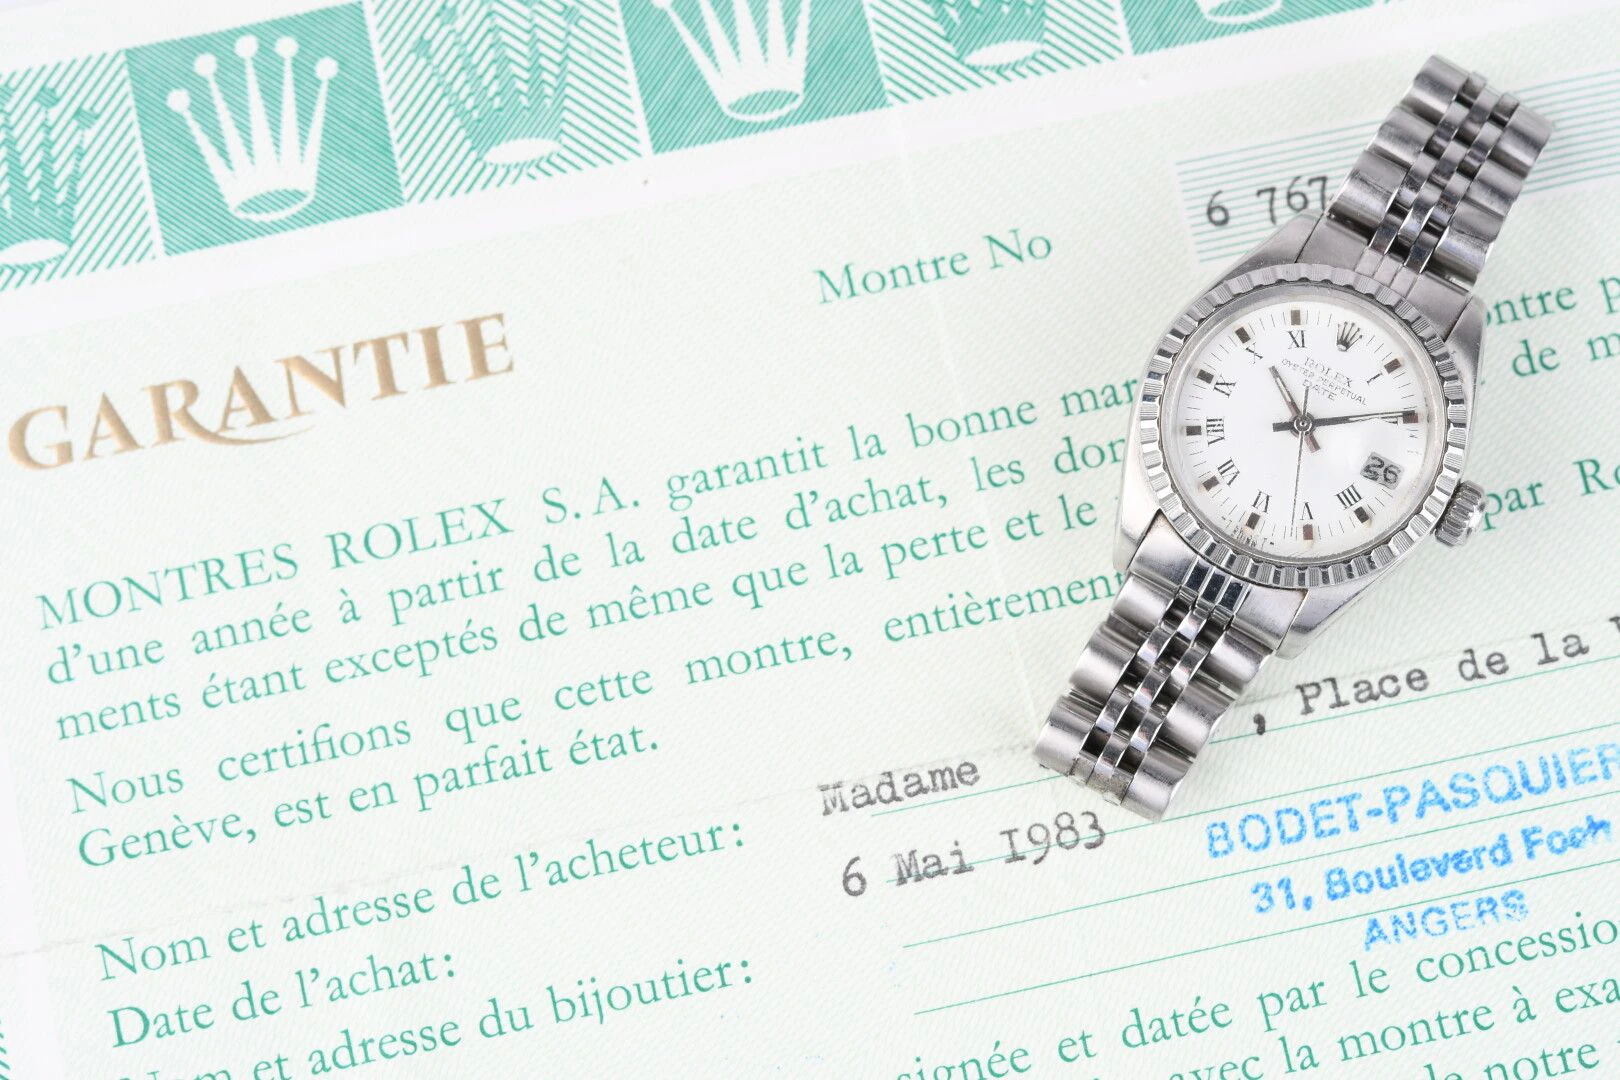 Rolex certificate